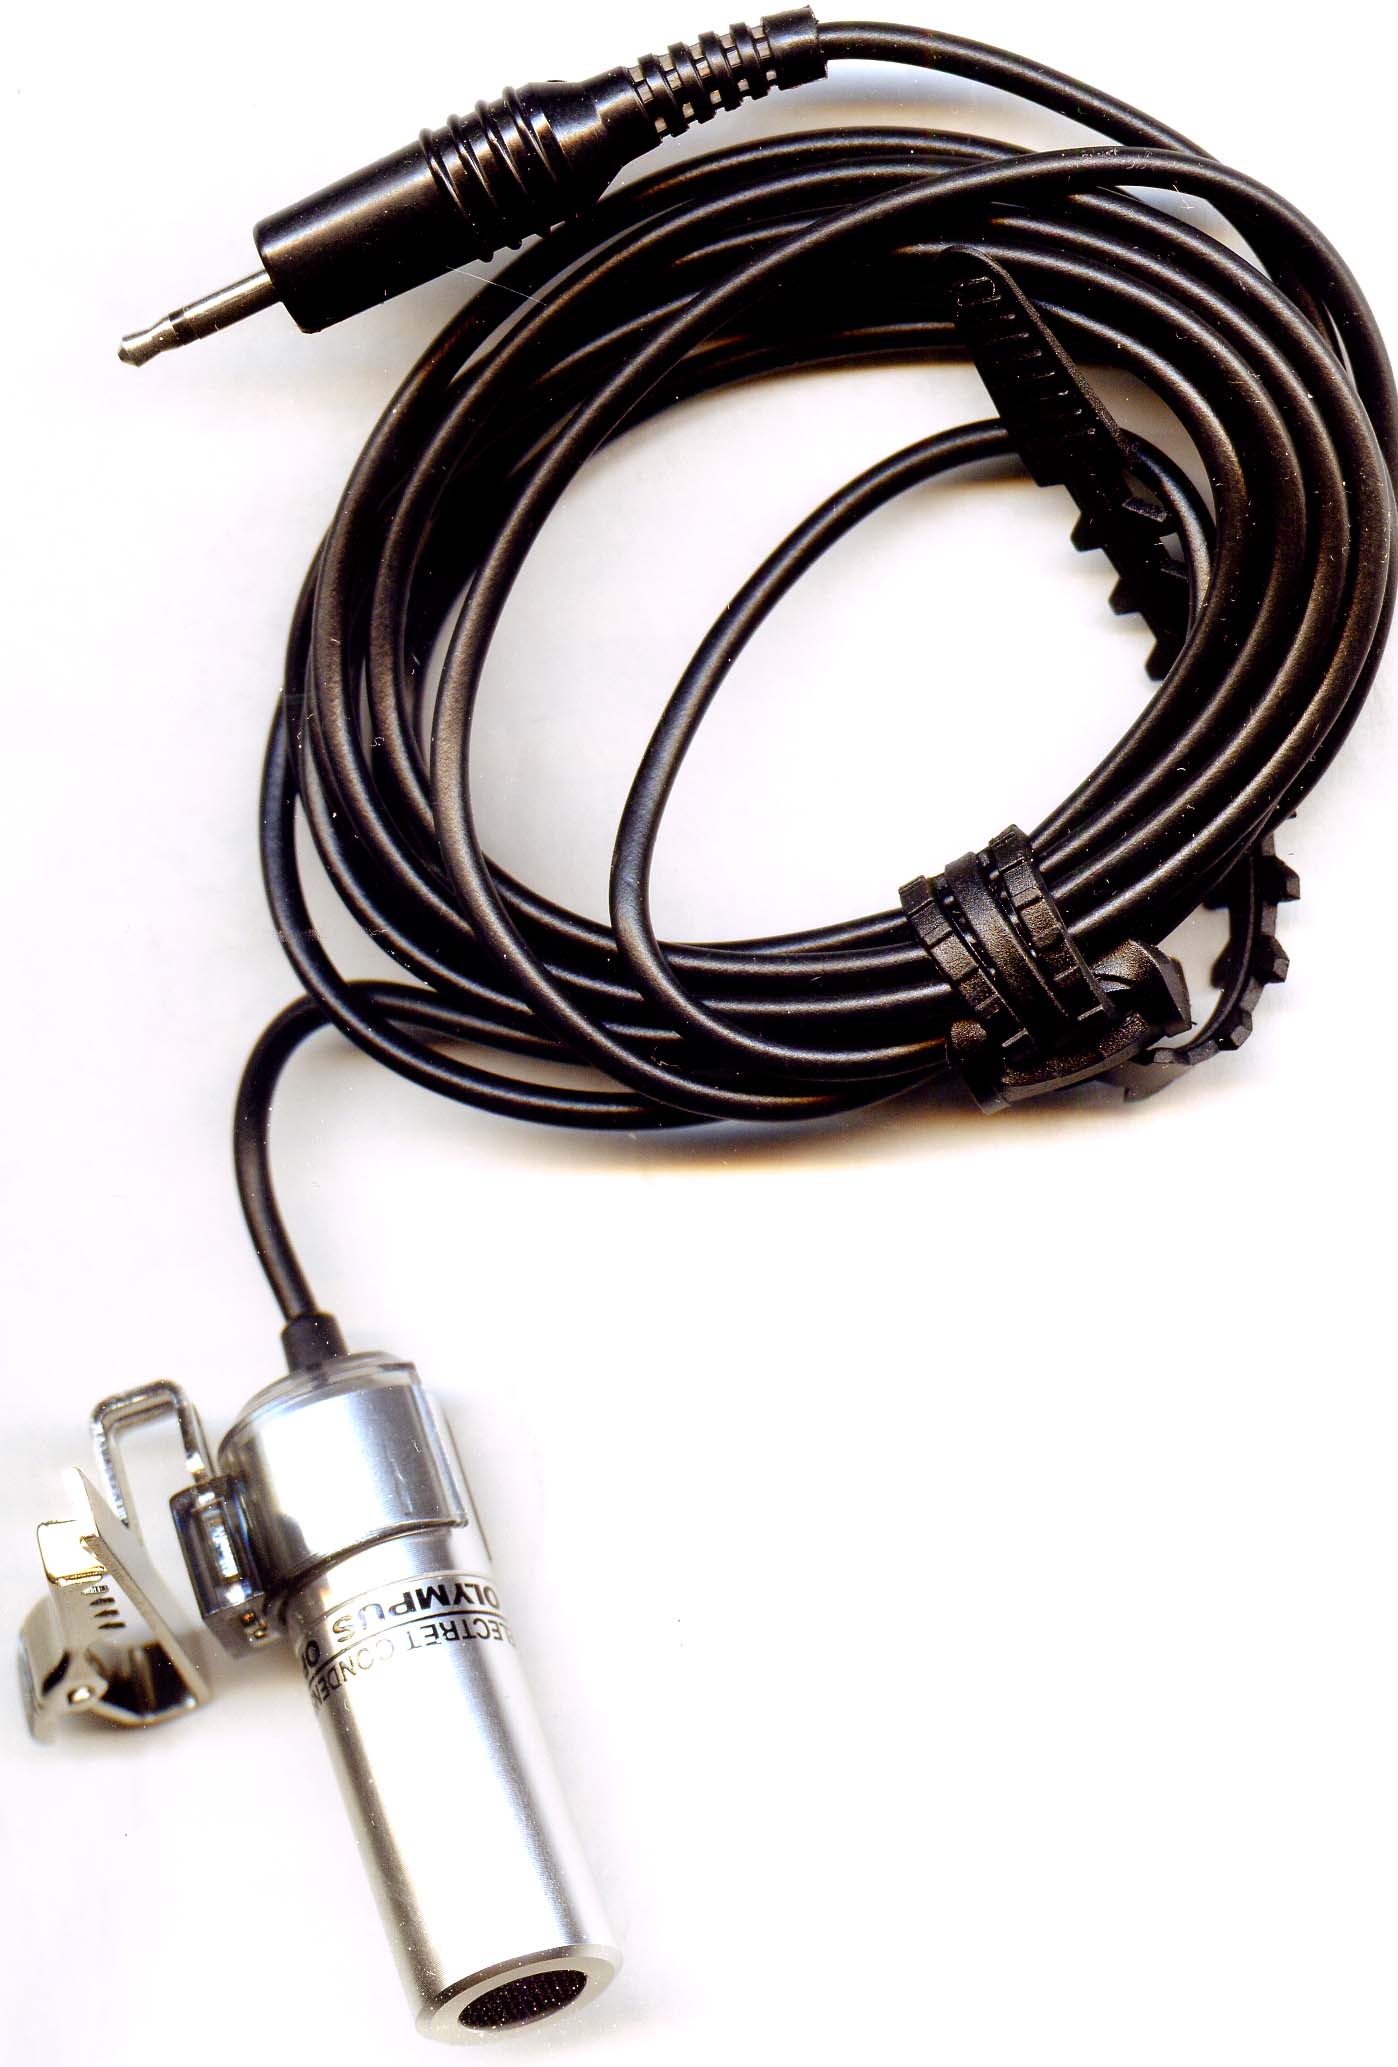 Электретный конденсаторный микрофон петличного типа Olympus Optical CO. на зажиме "крокодил"